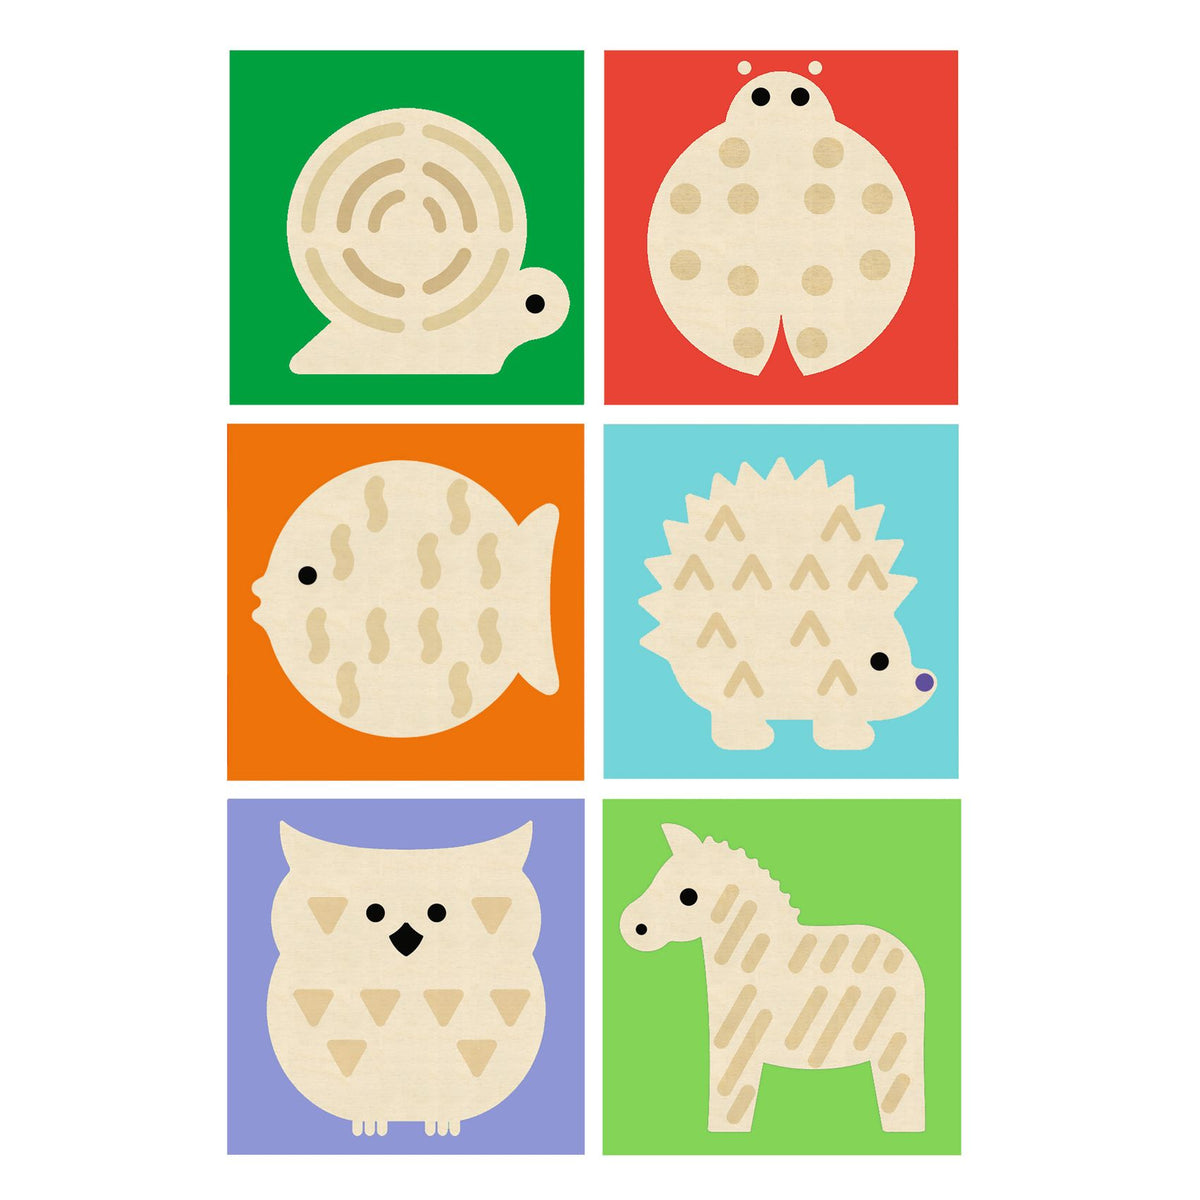 Vier Holzwürfel, die mit verschiedenen Motiven illustriert und graviert sind, damit das Kind das Visuelle mit dem Tastsinn verbindet. Durch die Kombination von Farbe und Motiven setzt das Kind sechs Tiere zusammen.